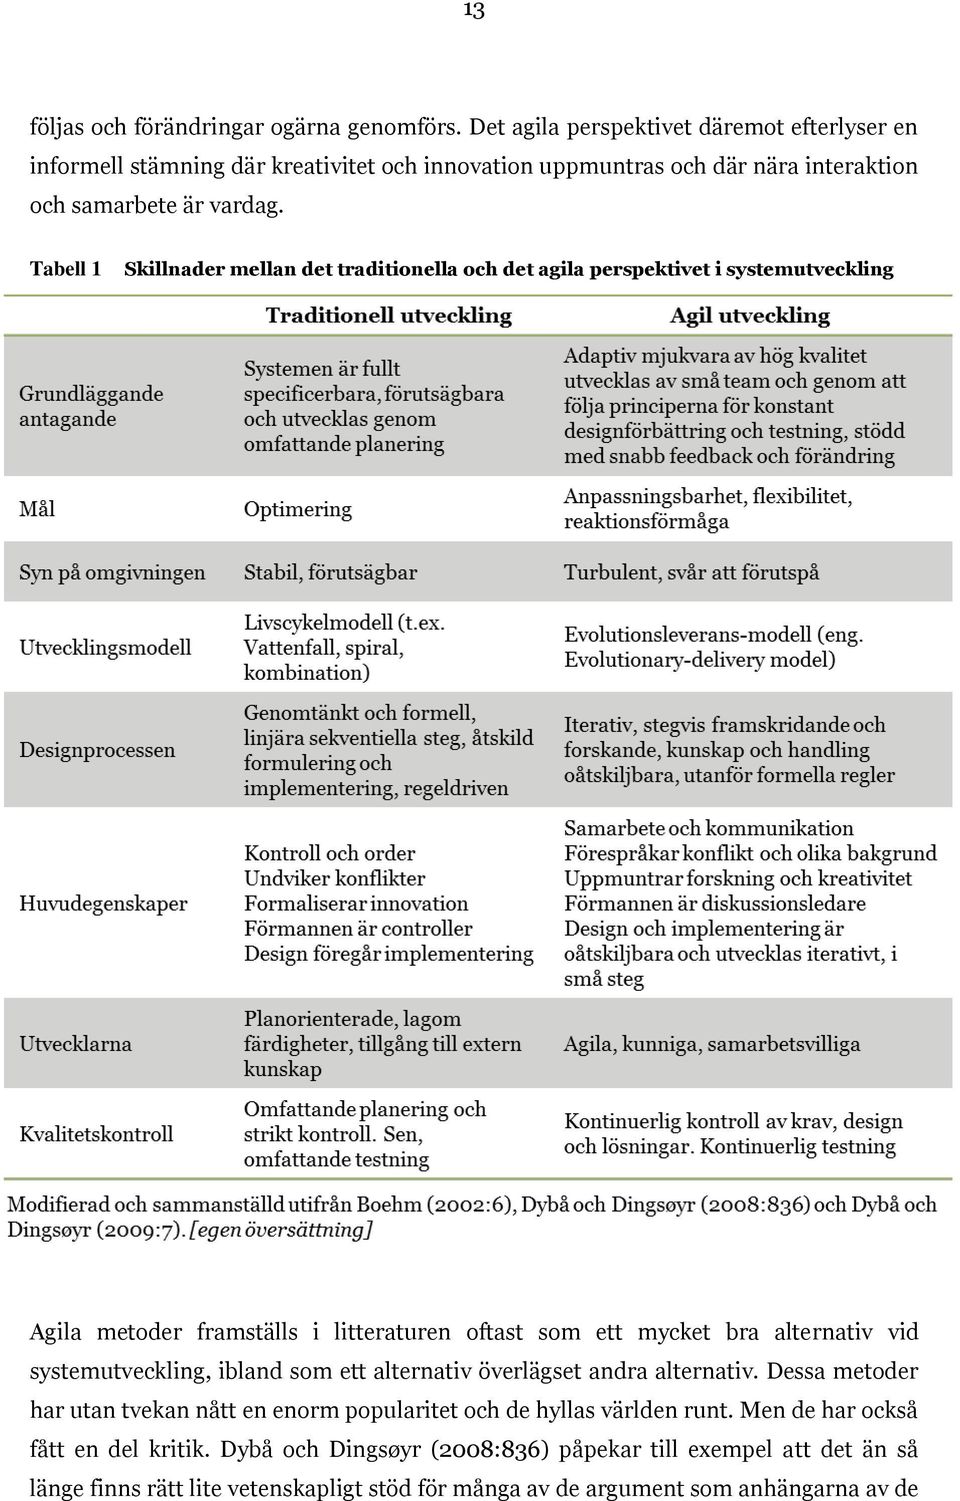 Tabell 1 Skillnader mellan det traditionella och det agila perspektivet i systemutveckling Agila metoder framställs i litteraturen oftast som ett mycket bra alternativ vid